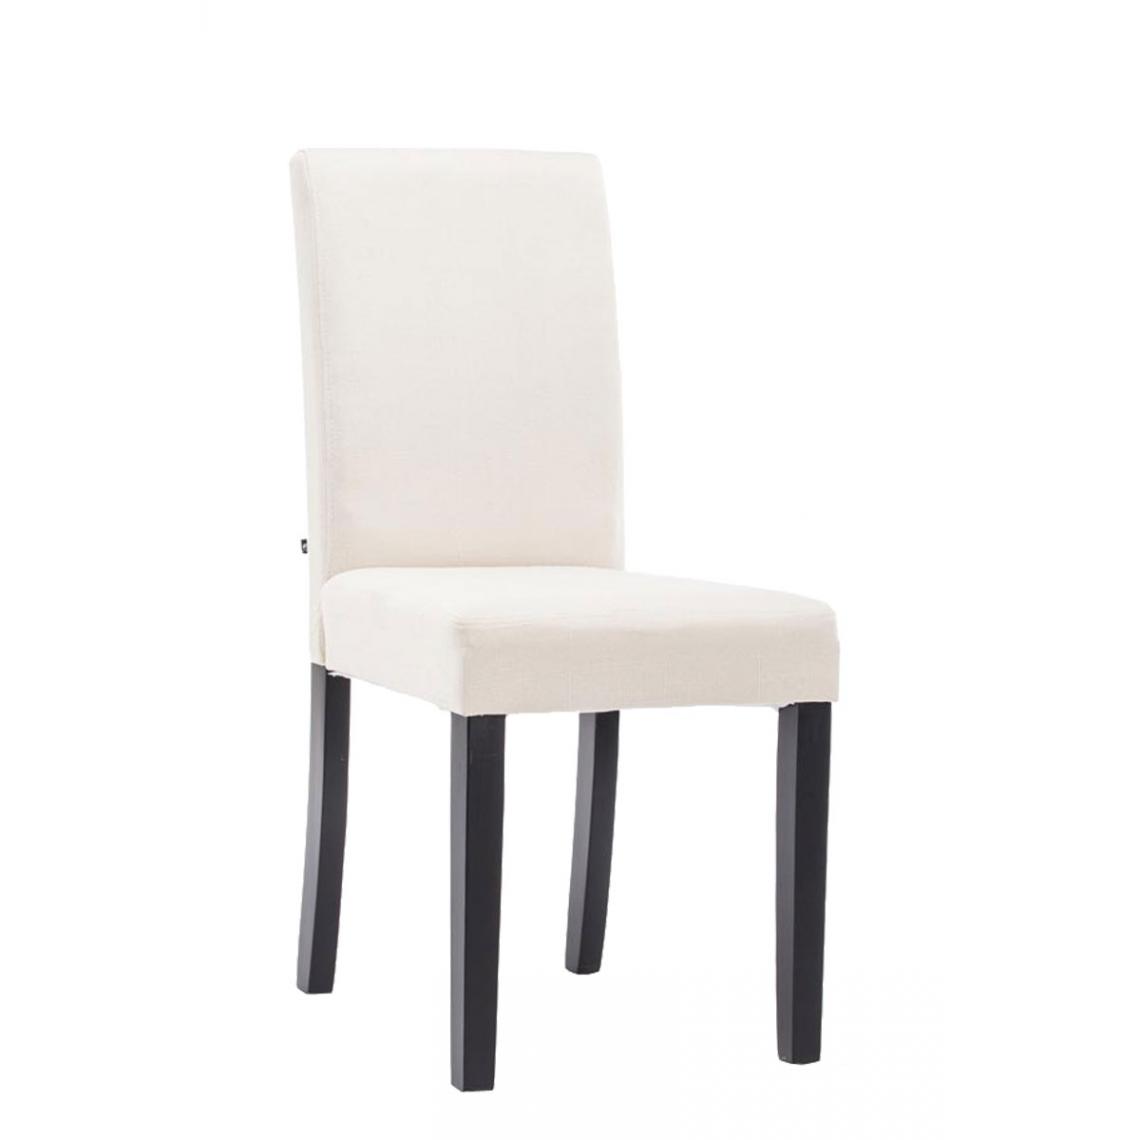 Icaverne - Admirable Chaise de salle à manger edition Rabat tissu noir couleur crème - Chaises